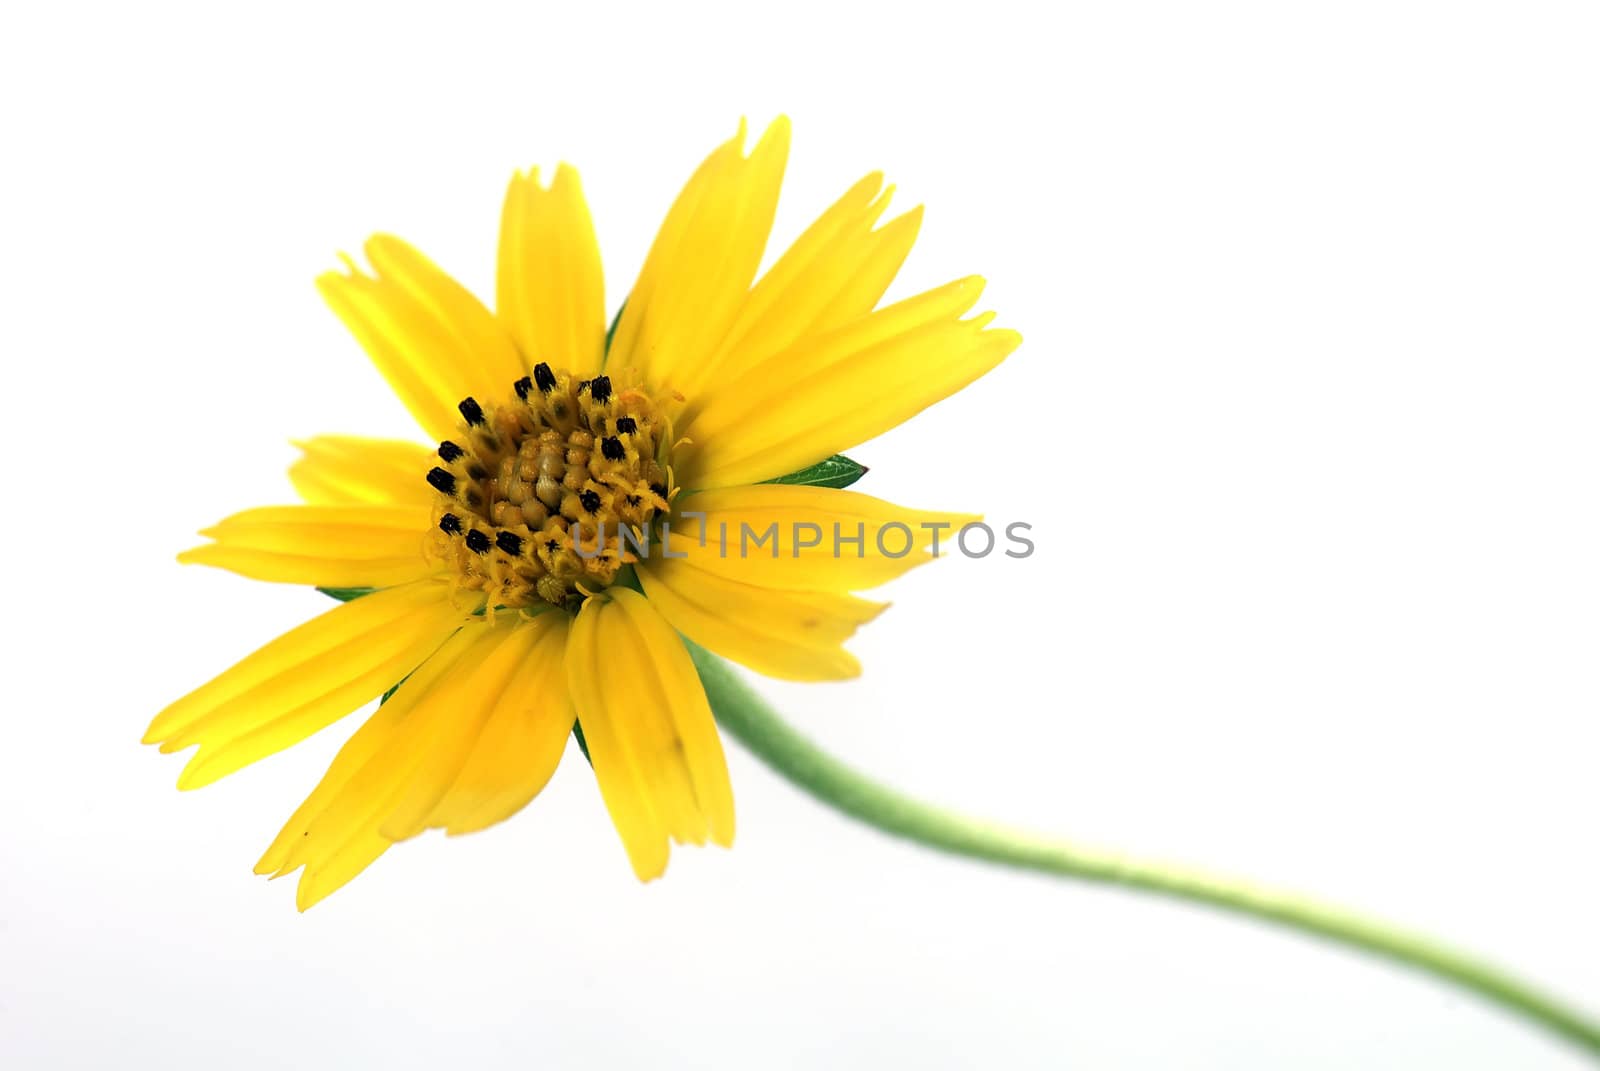 yellow chrysanthemum over white background